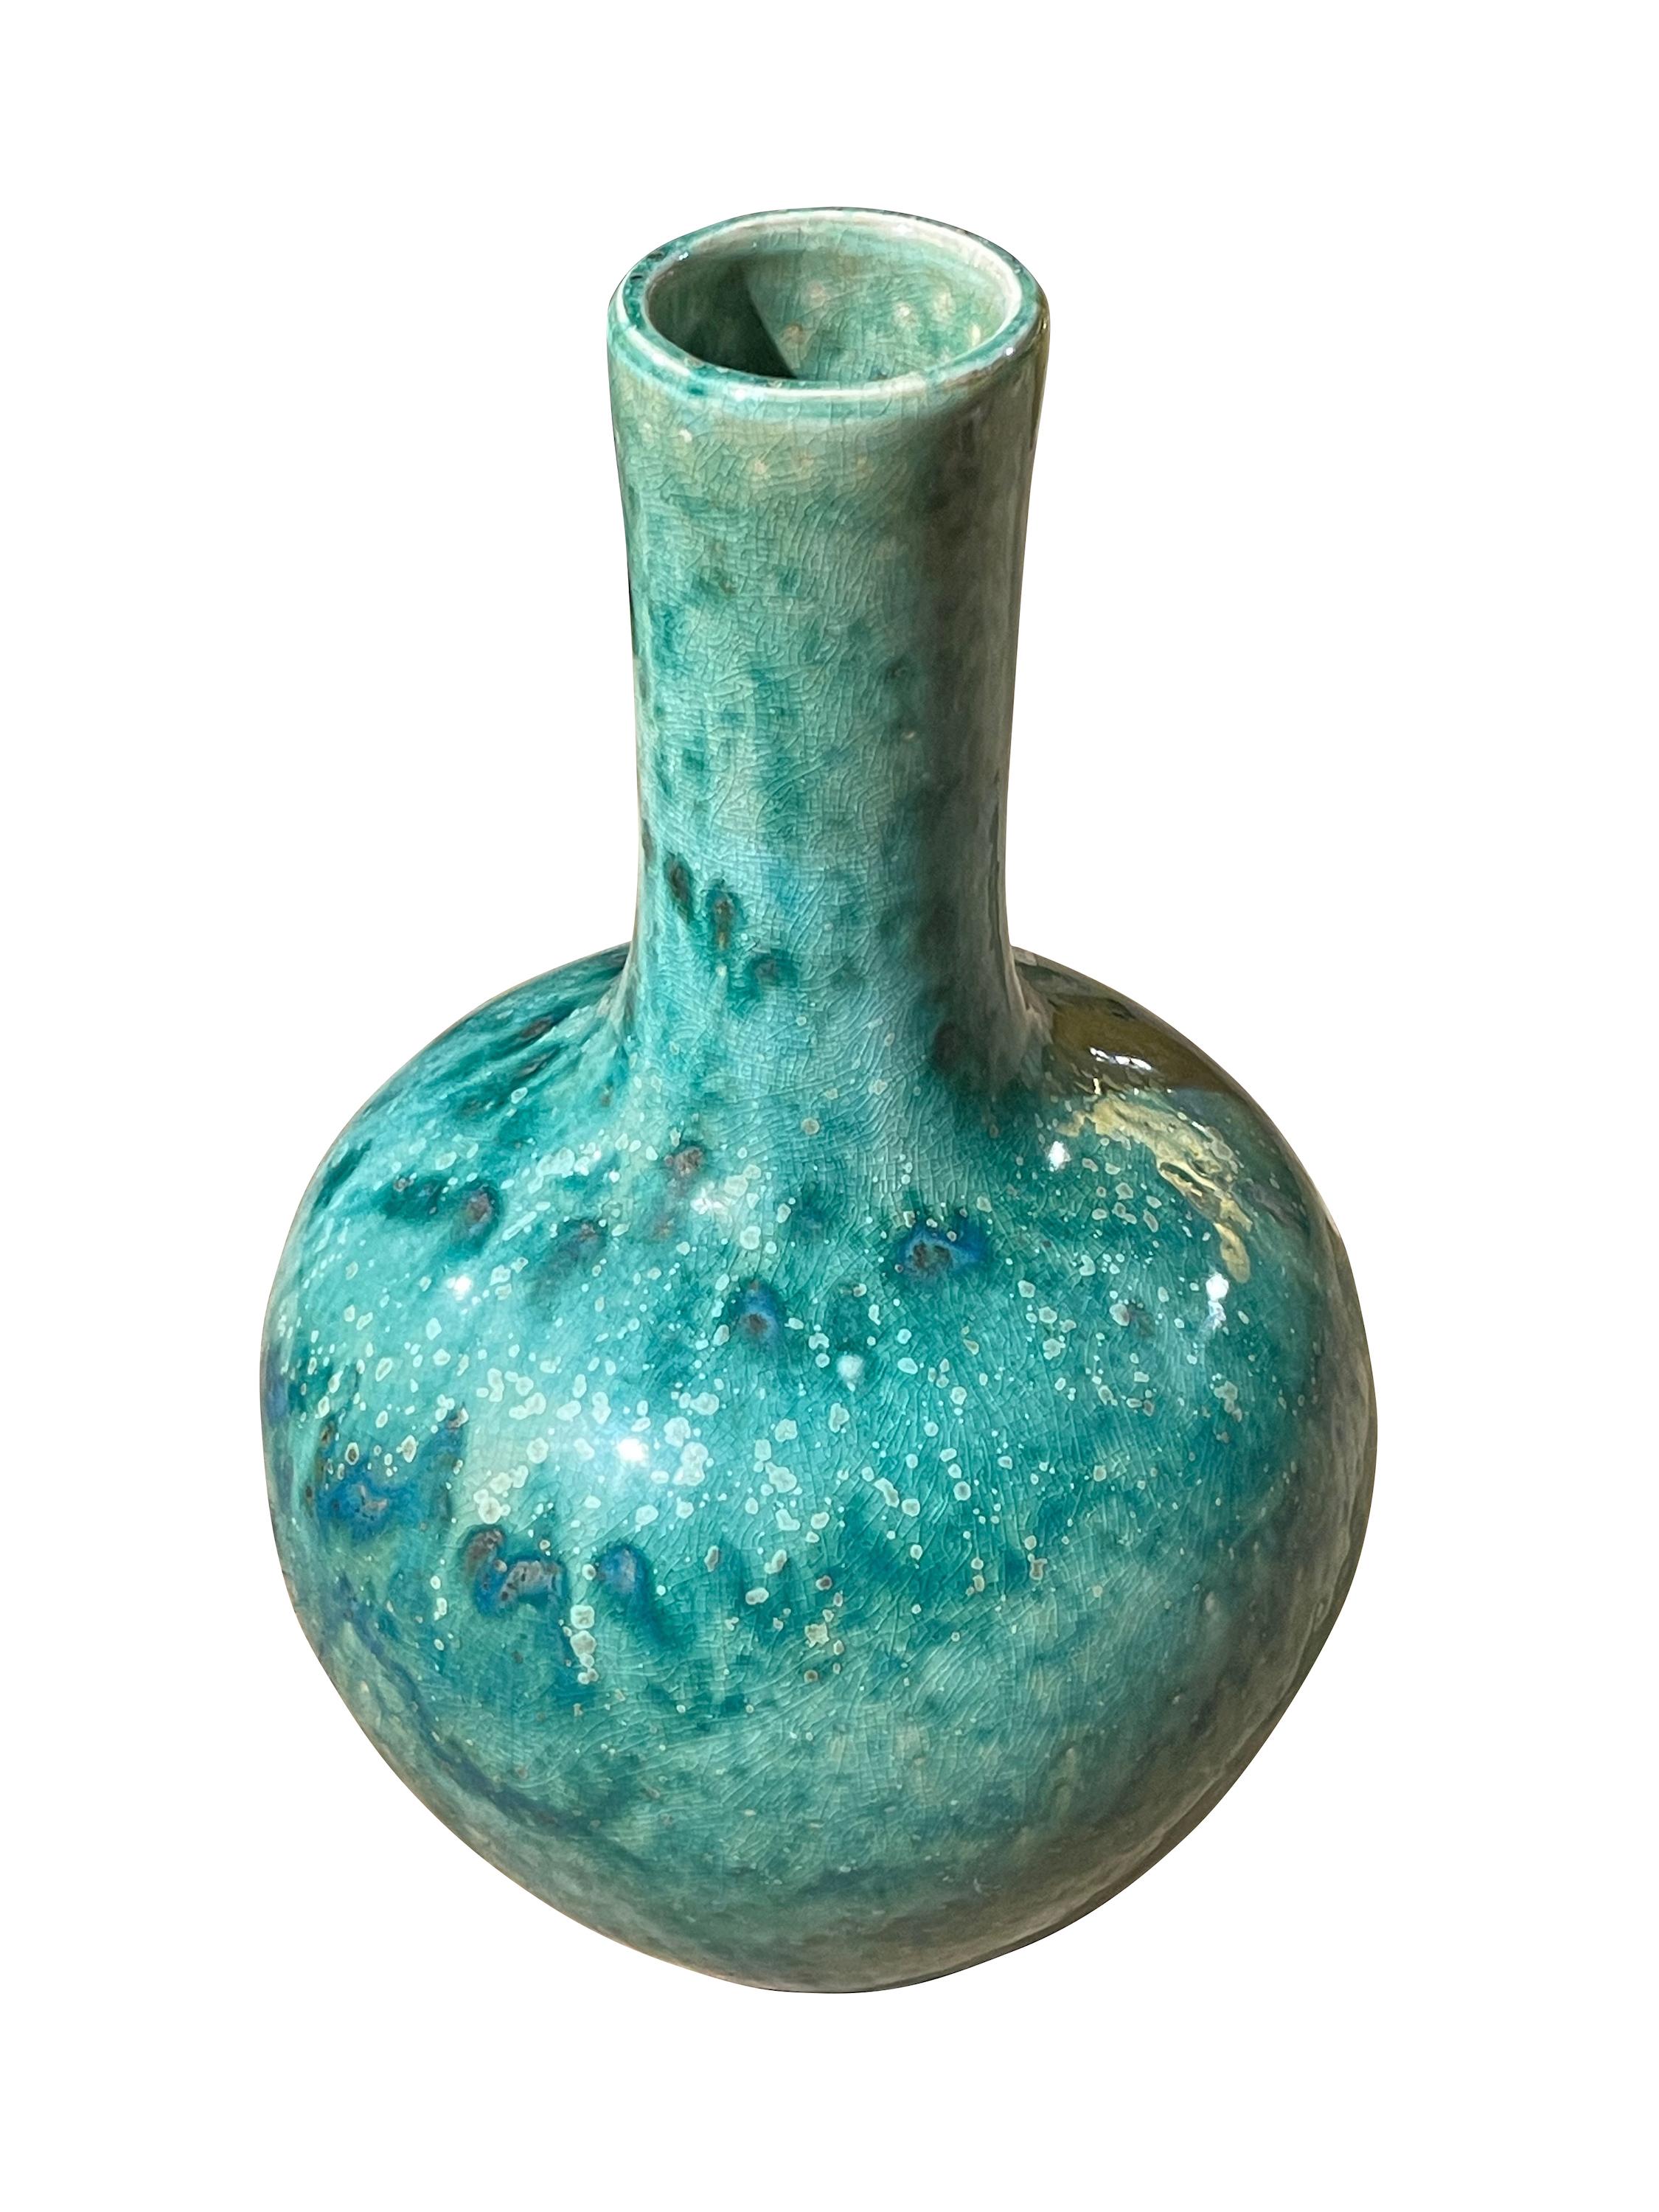 Vase chinois contemporain de couleur turquoise tachetée avec glaçure craquelée.
Design/One.
A partir d'une large collection de tailles et de formes différentes.
ARRIVÉE EN MARS